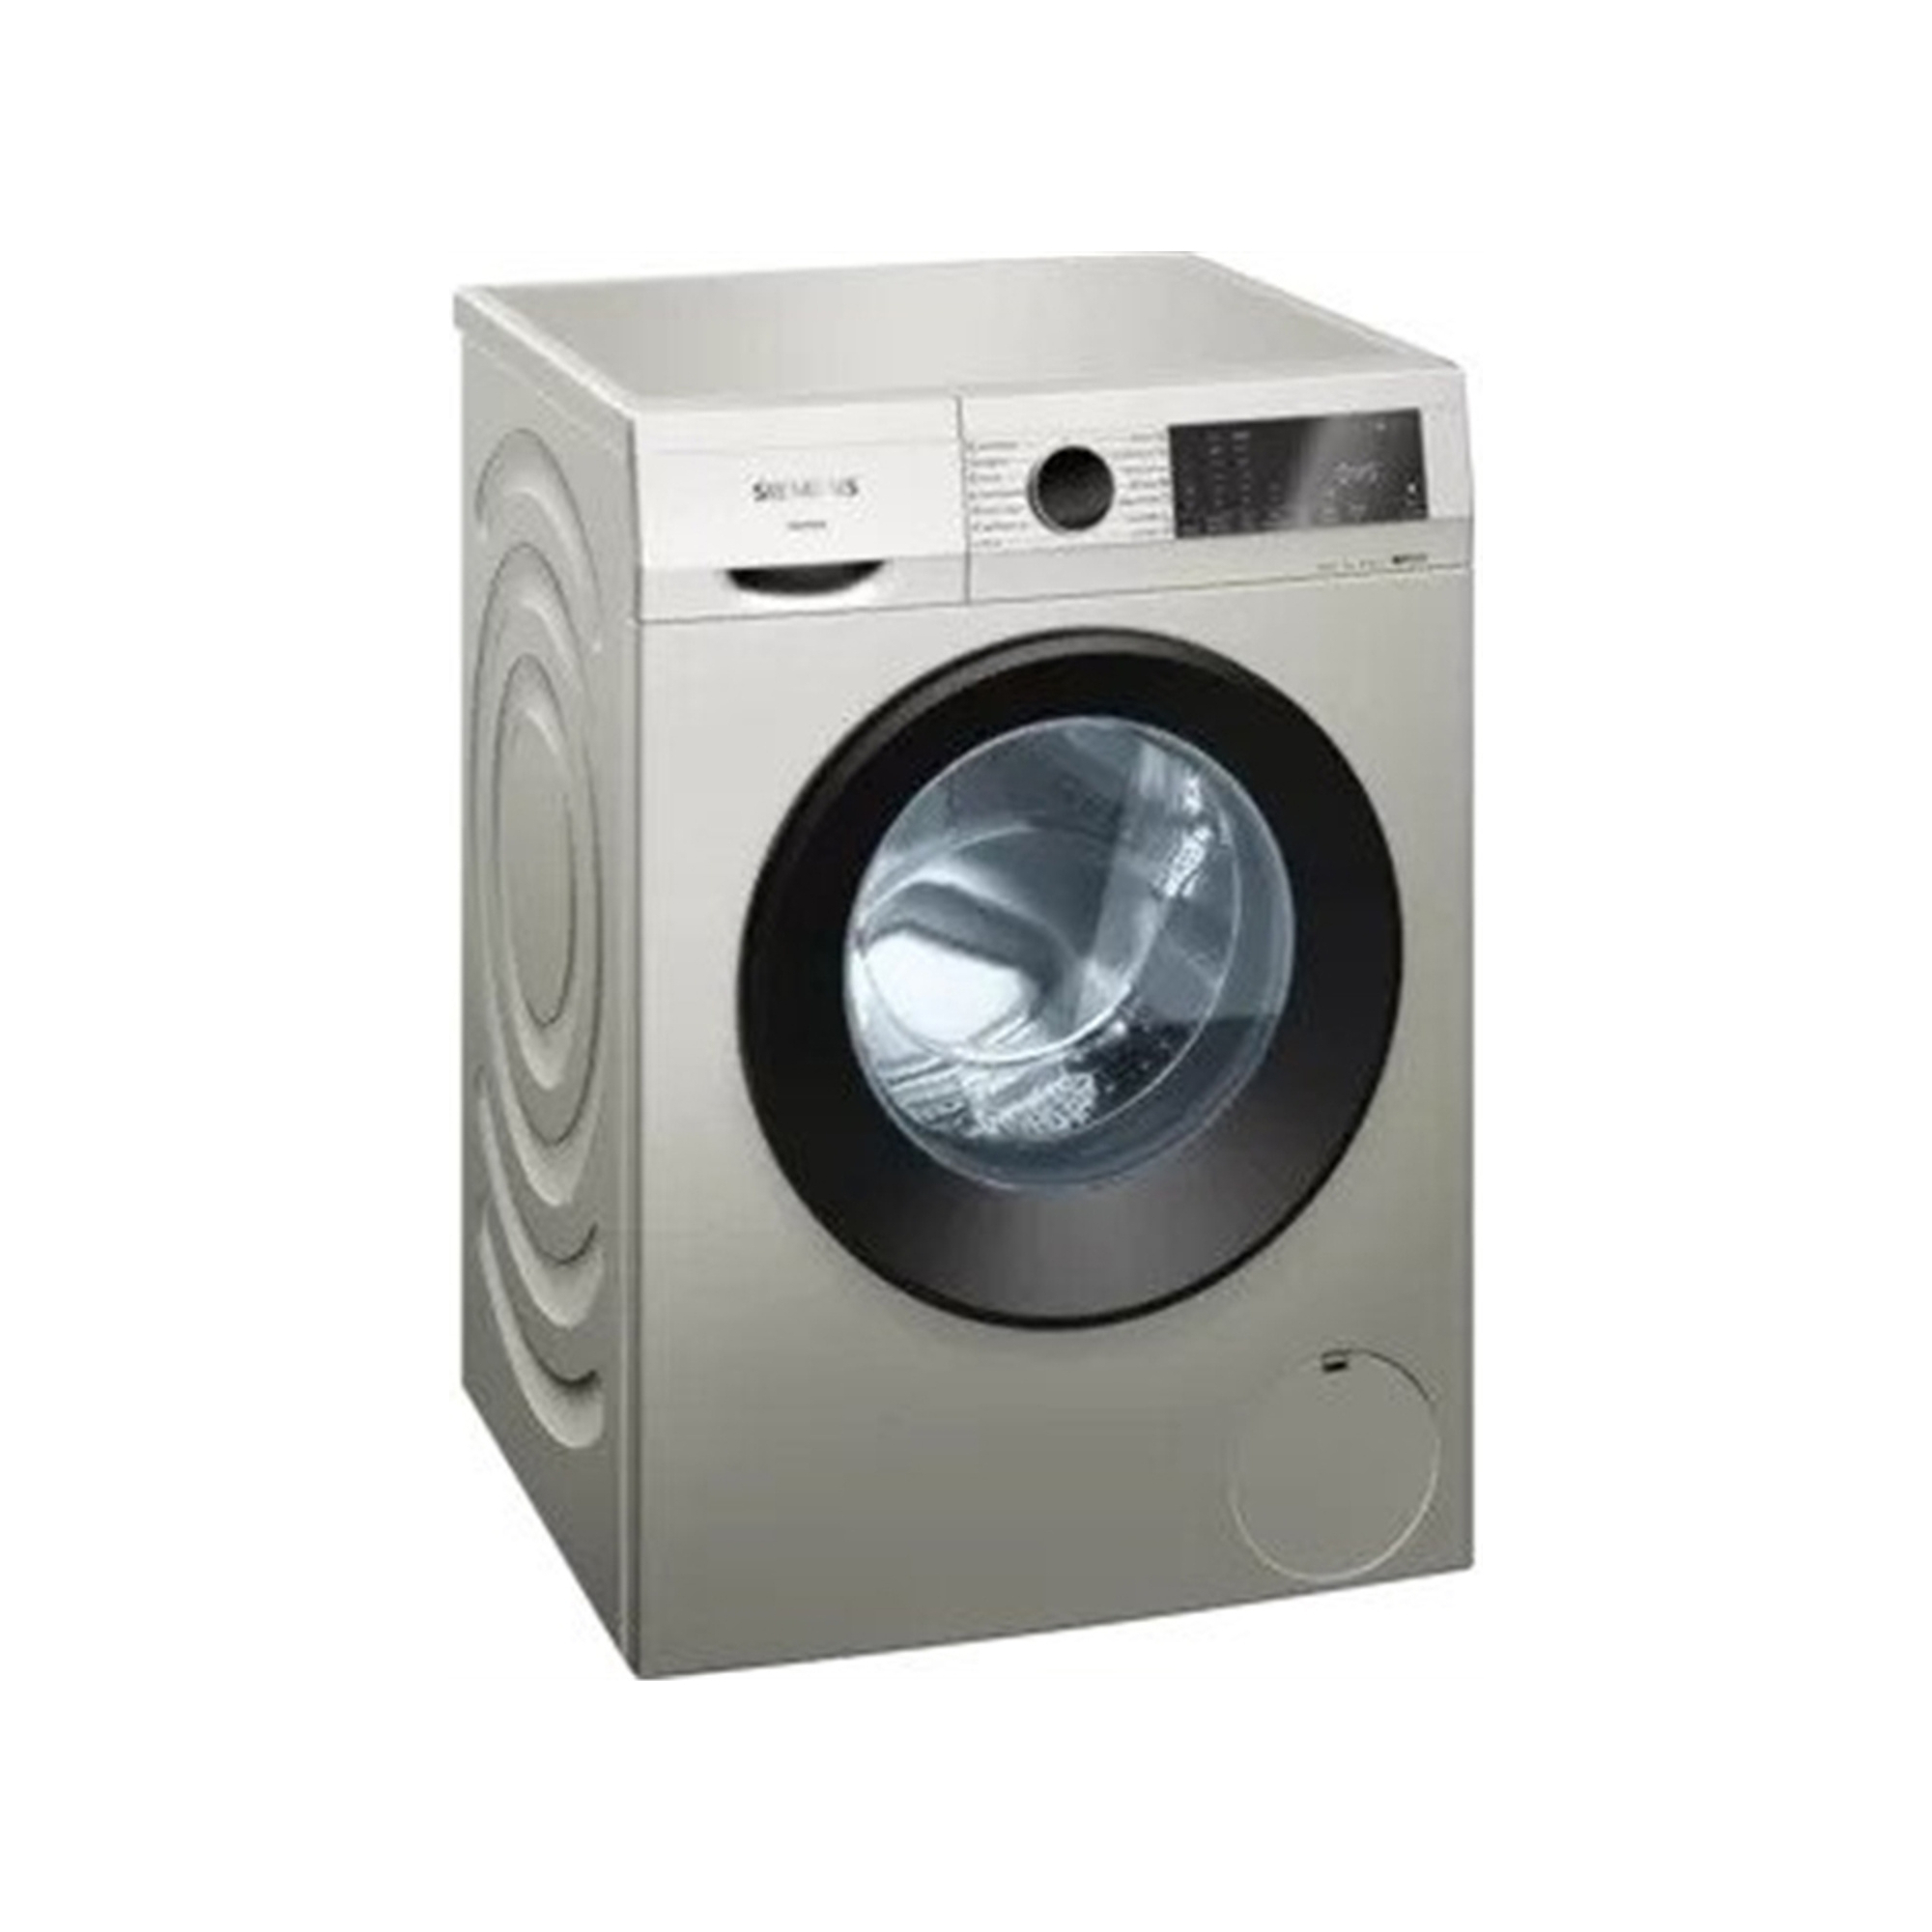 Siemens IQ300 9kg Frontloader Washing Machine - Silver Inox